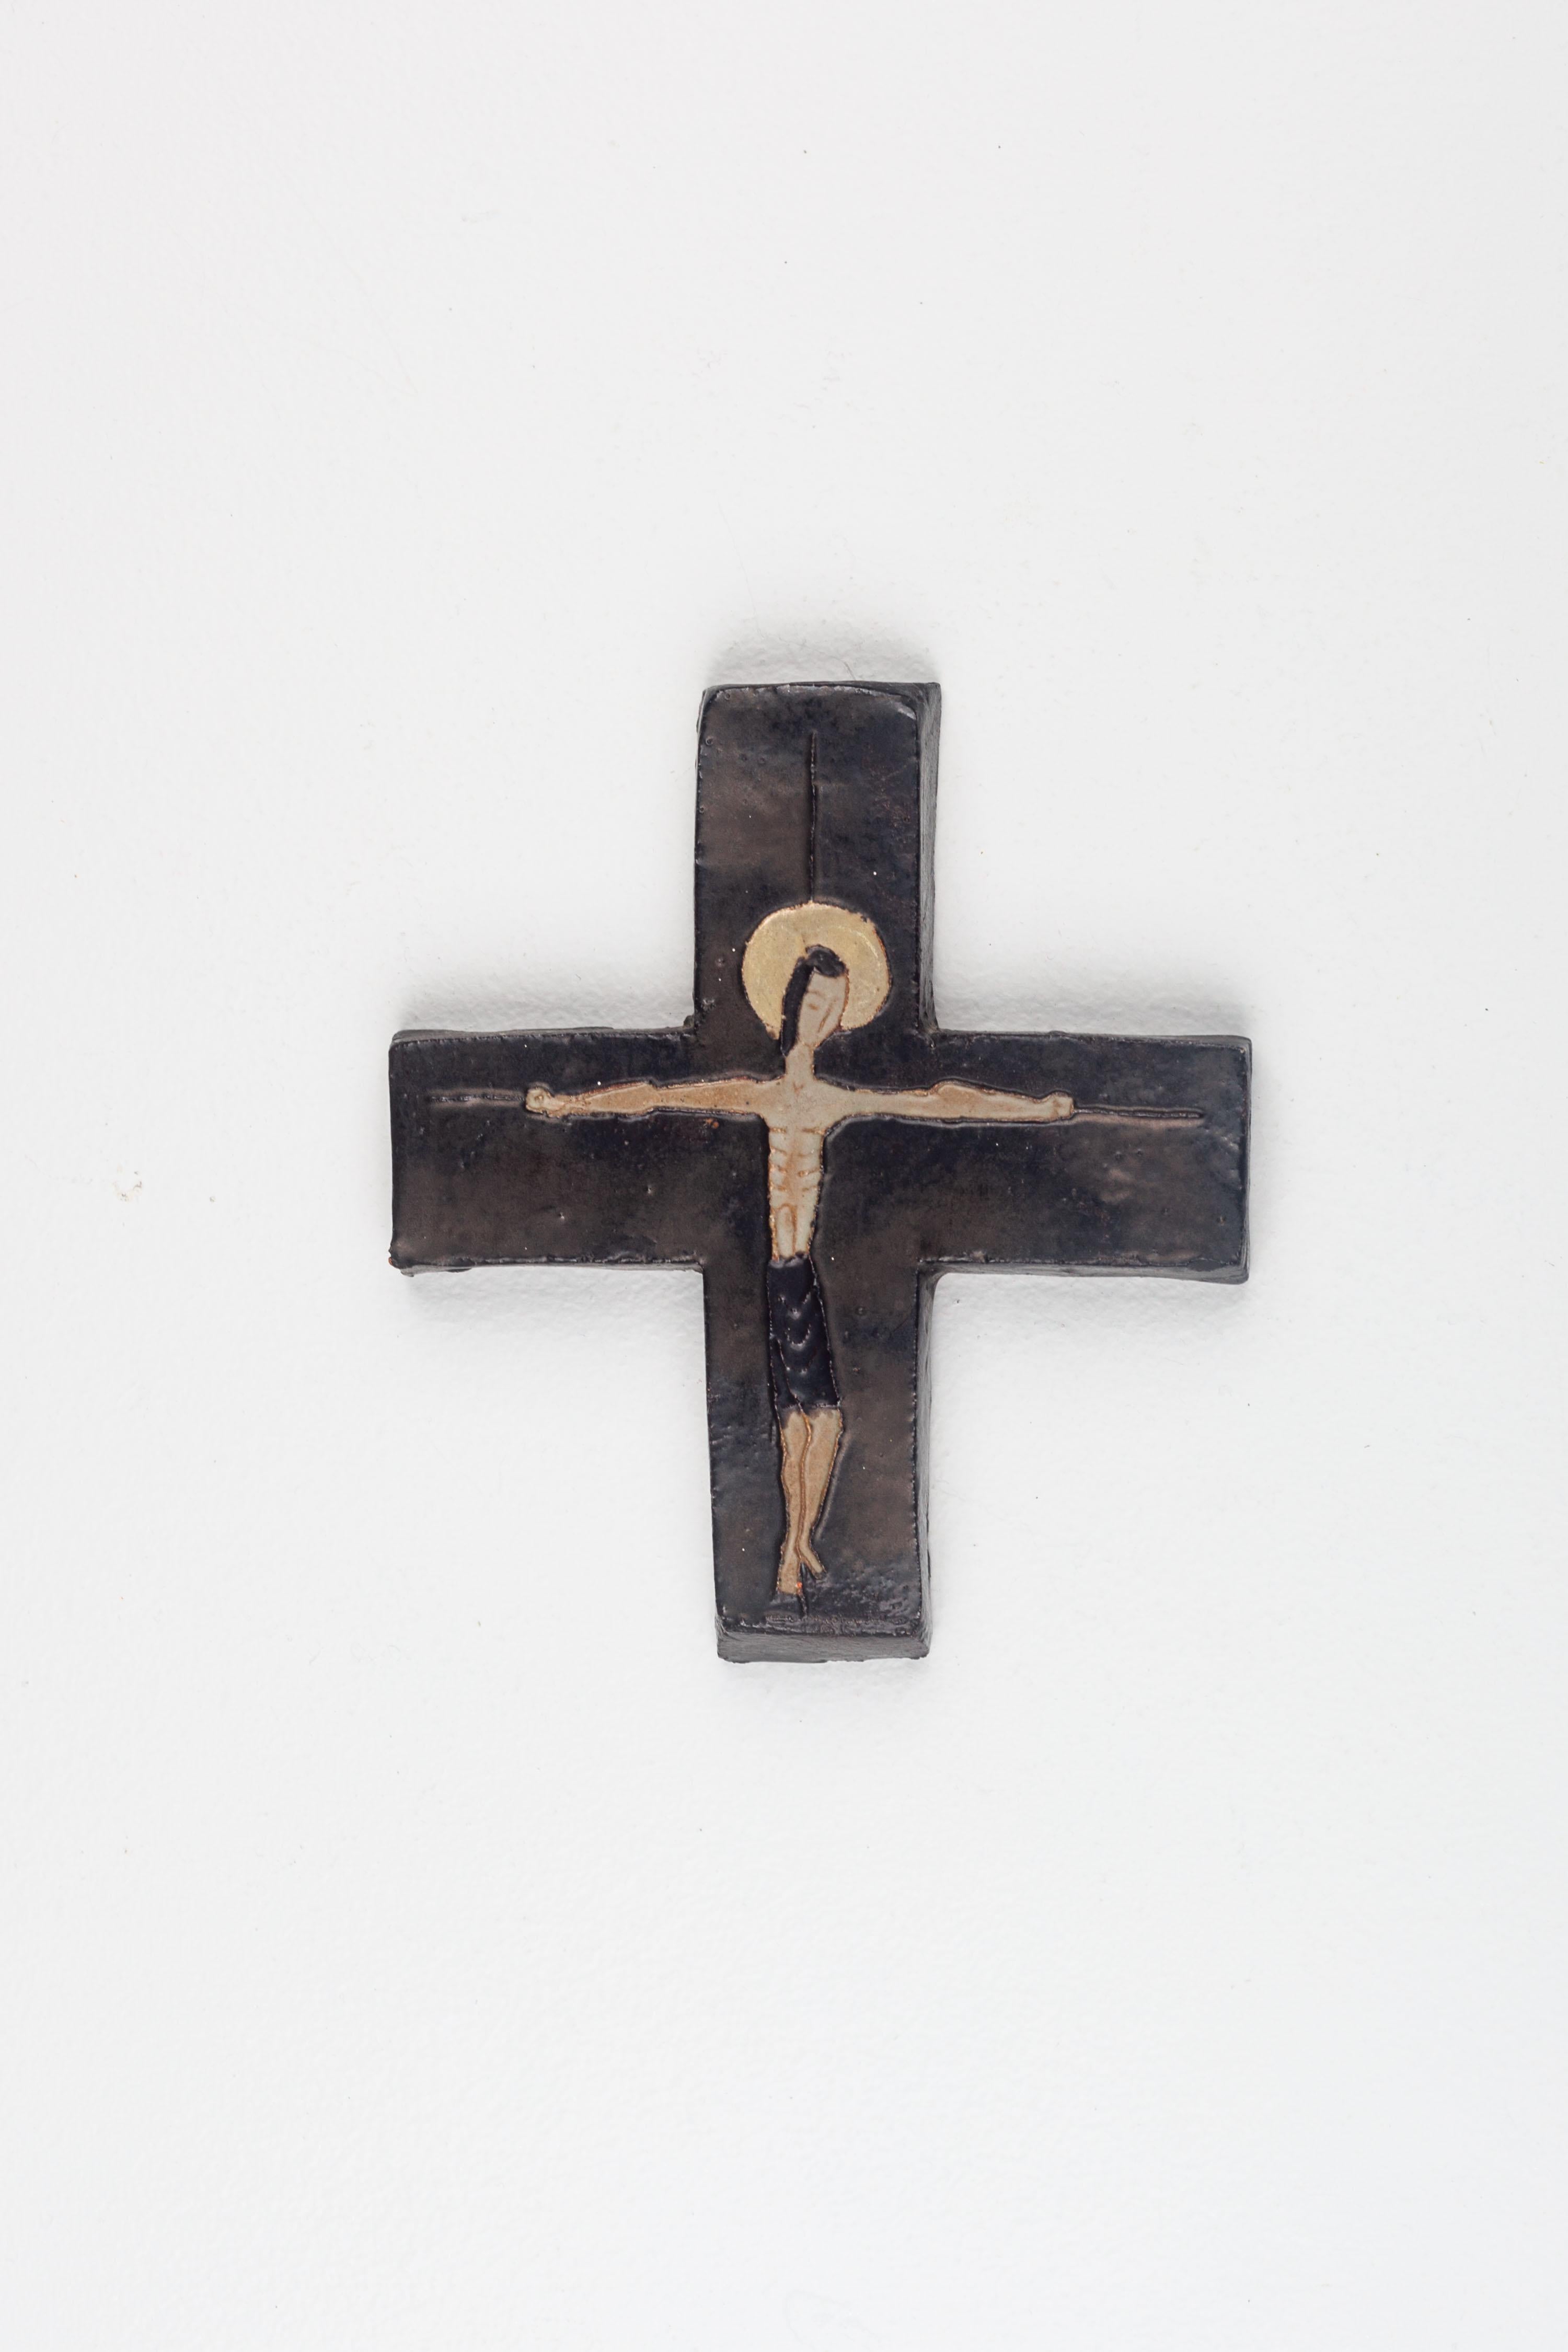 oak island cross found